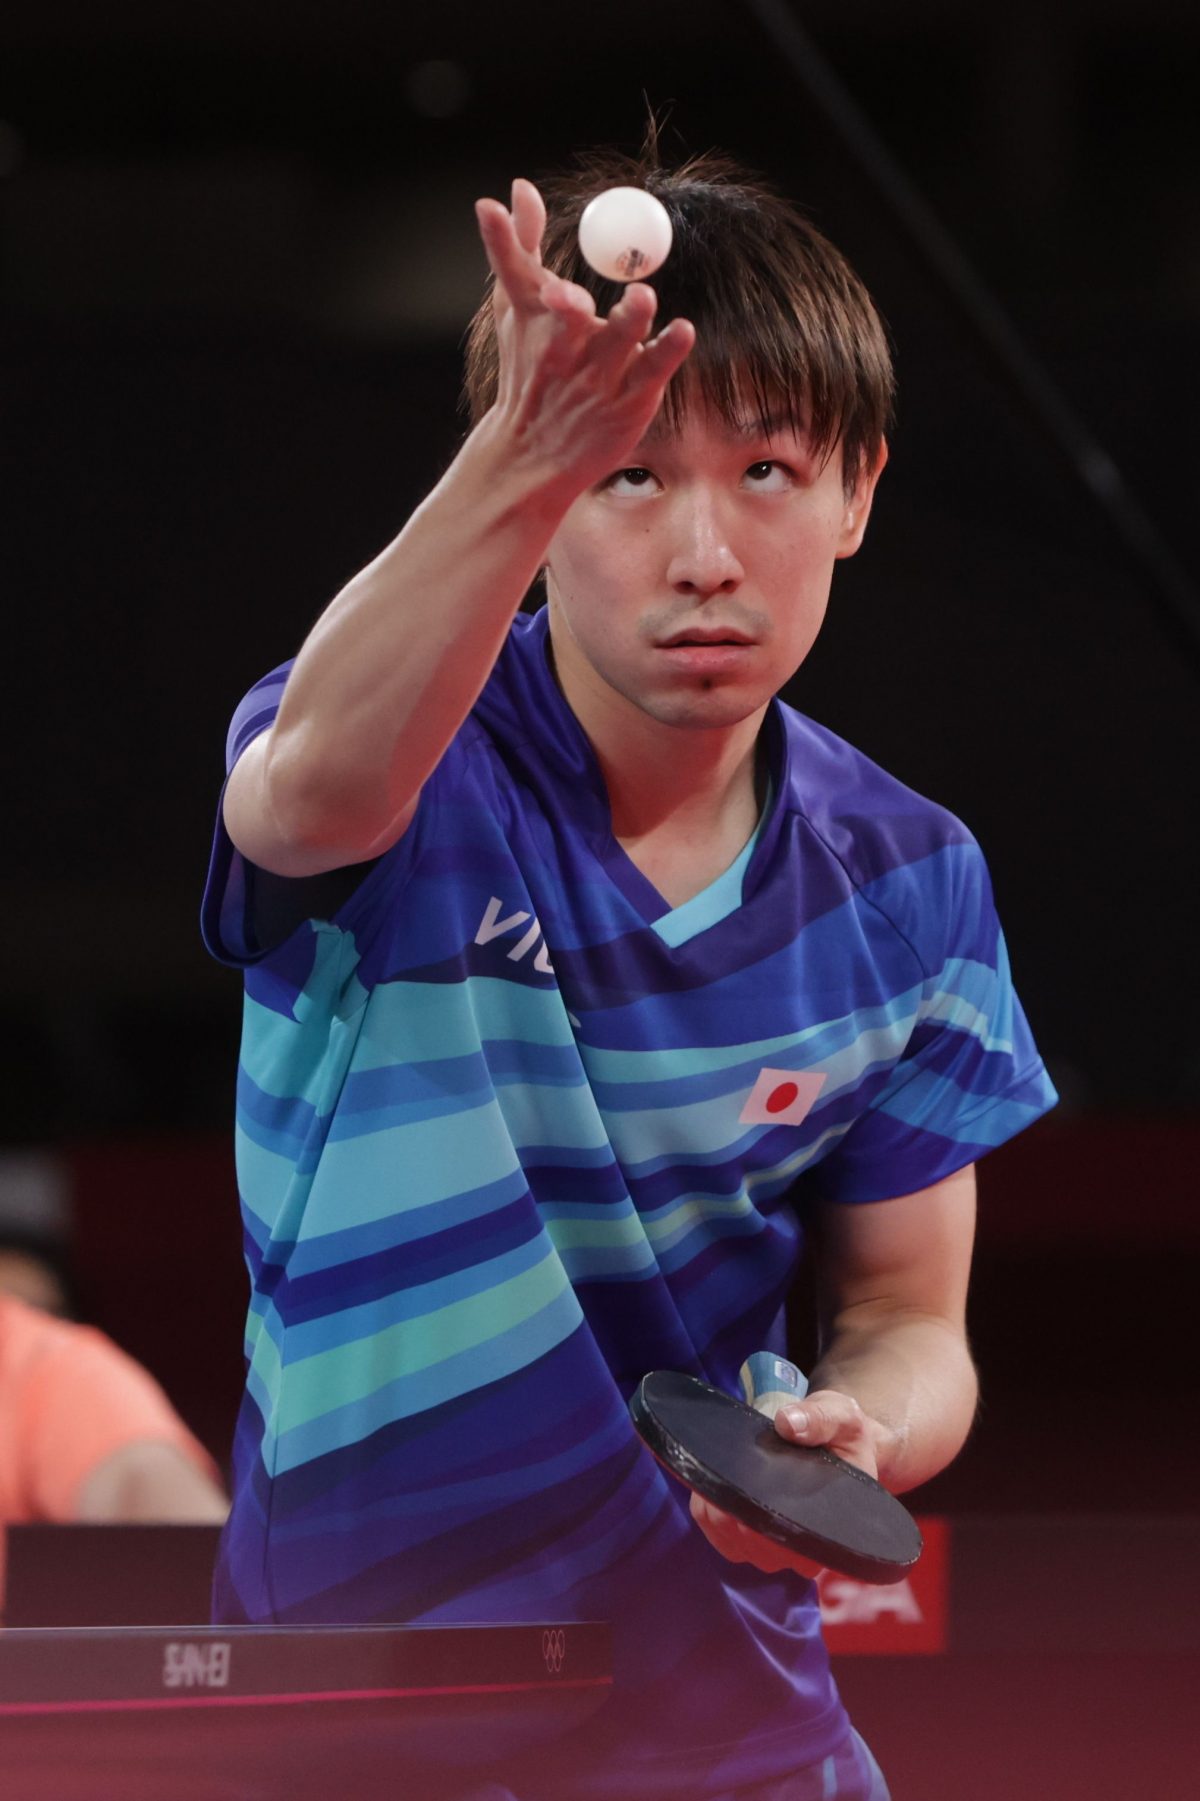 五輪卓球 男子日本が銅獲得 日本代表 全選手がメダル獲得で閉幕 卓球メディアrallys 東京五輪卓球競技 7月24日 8月6日 場所 ｄメニューニュース Nttドコモ